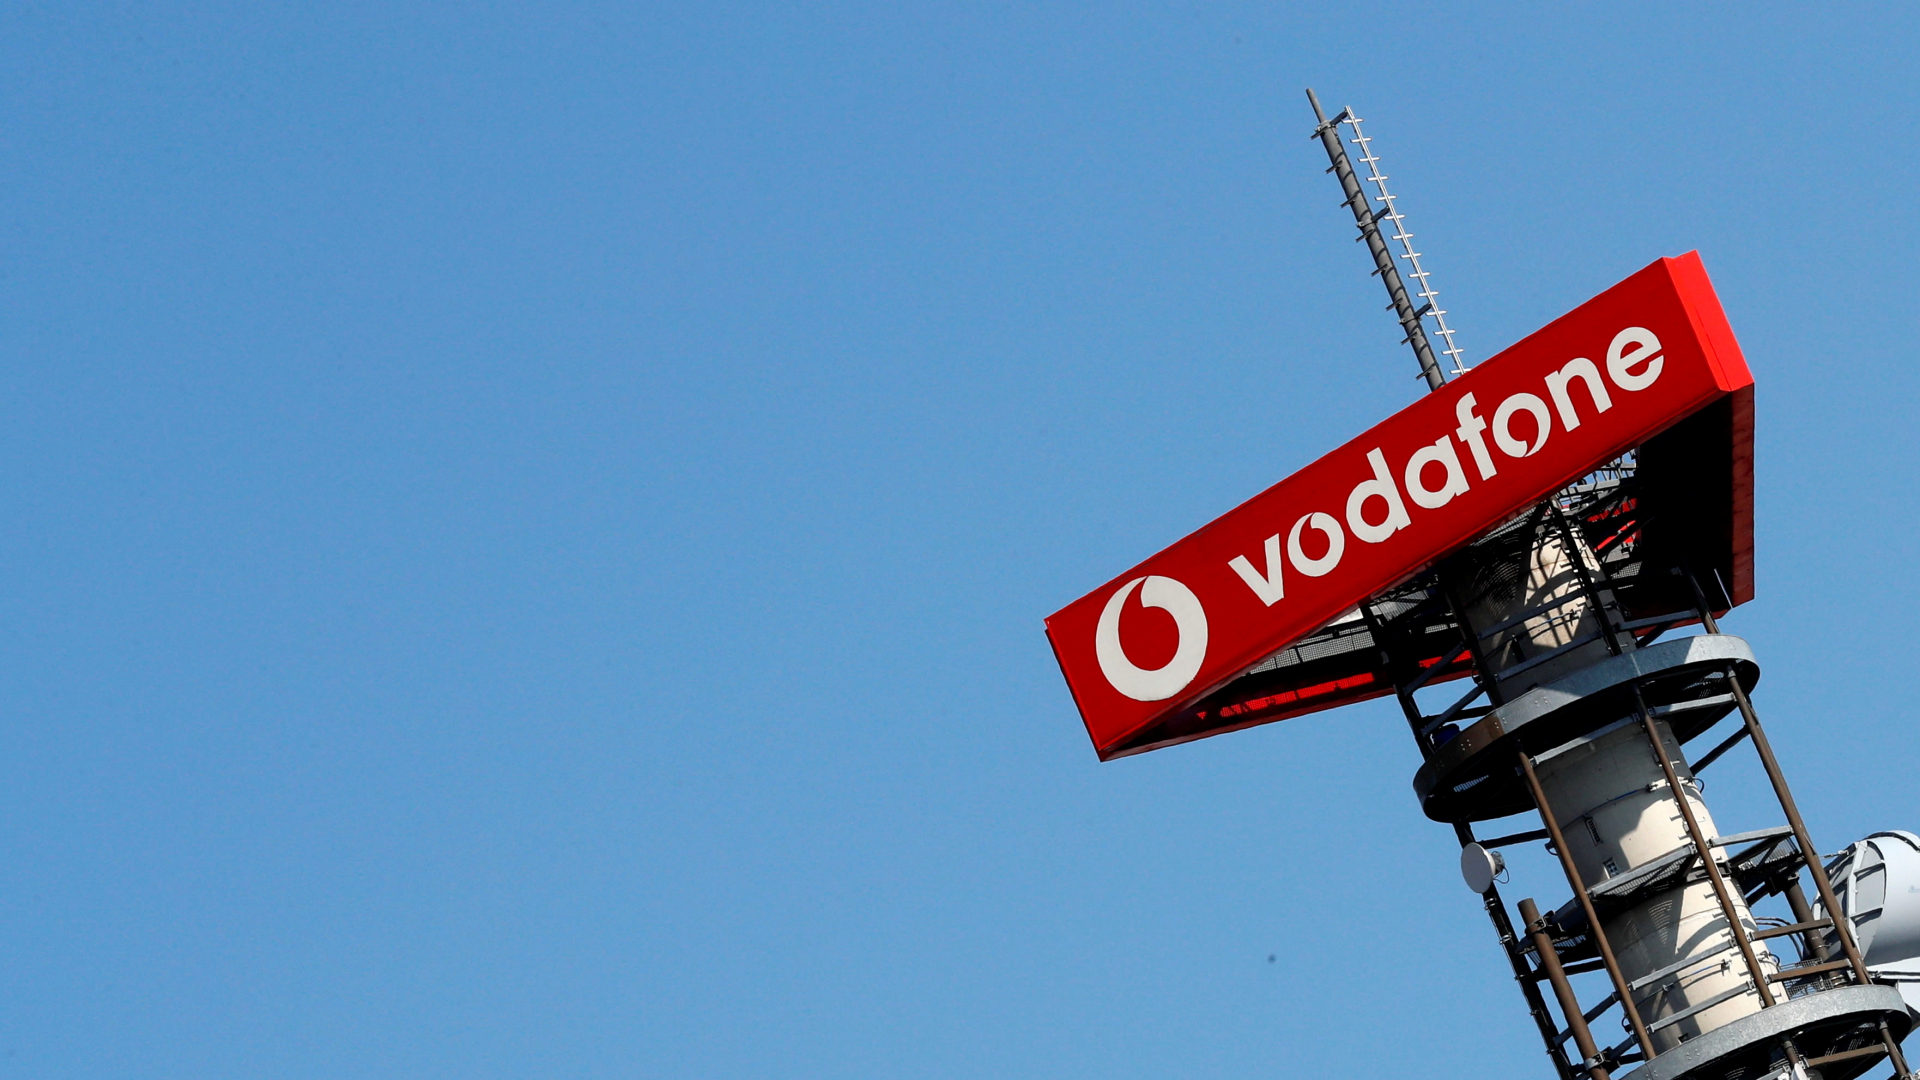 Mobilfunkmast des Anbieters Vodafone | REUTERS